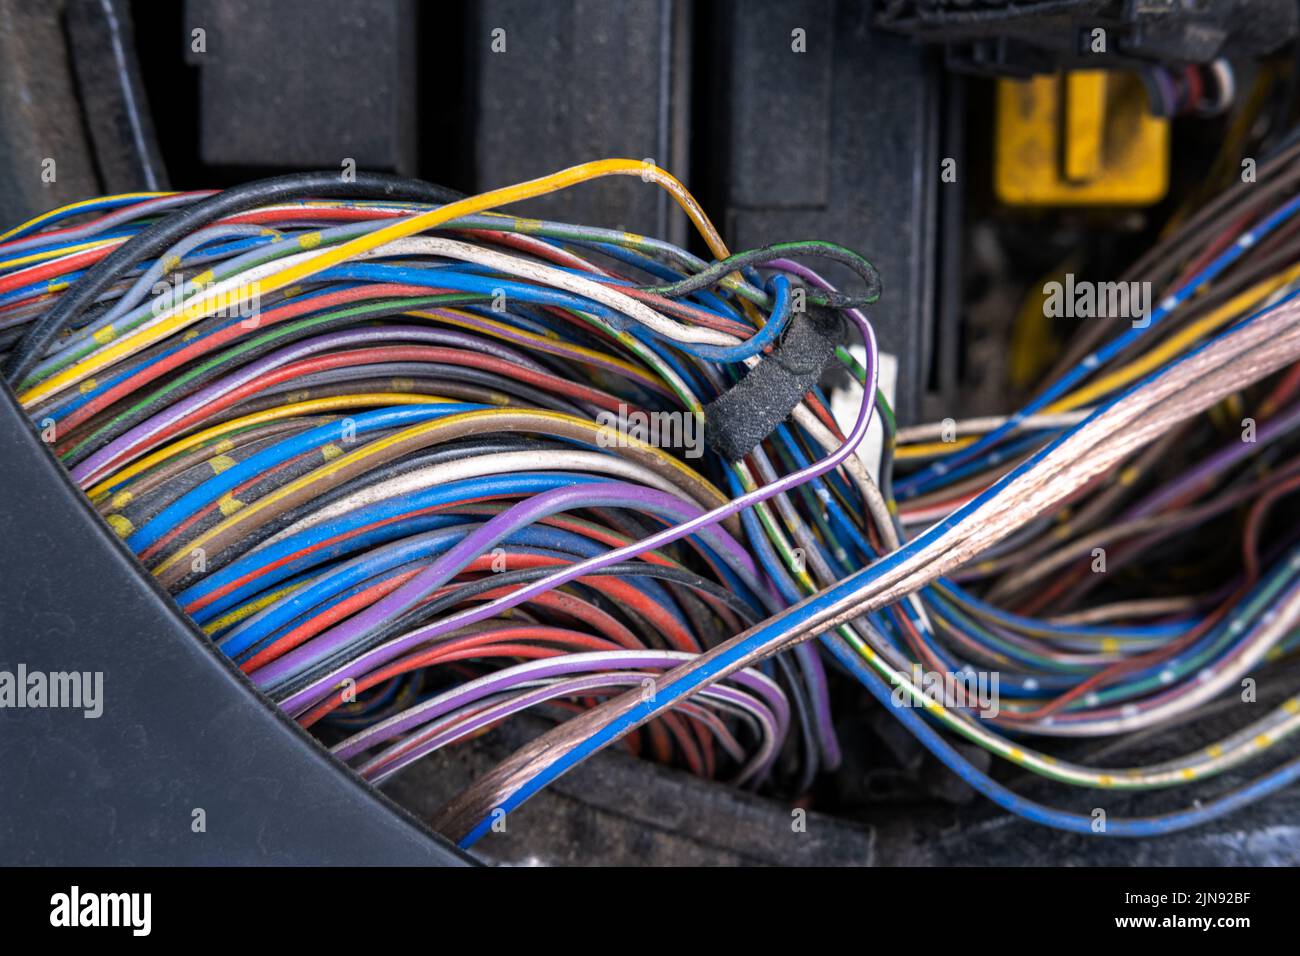 Ein Paket elektrischer Drähte oder Kabel ist stark miteinander verwechselt. Reste von Drähten in verschiedenen Farben. Auf der w befinden sich komprimierte Spitzen Stockfoto